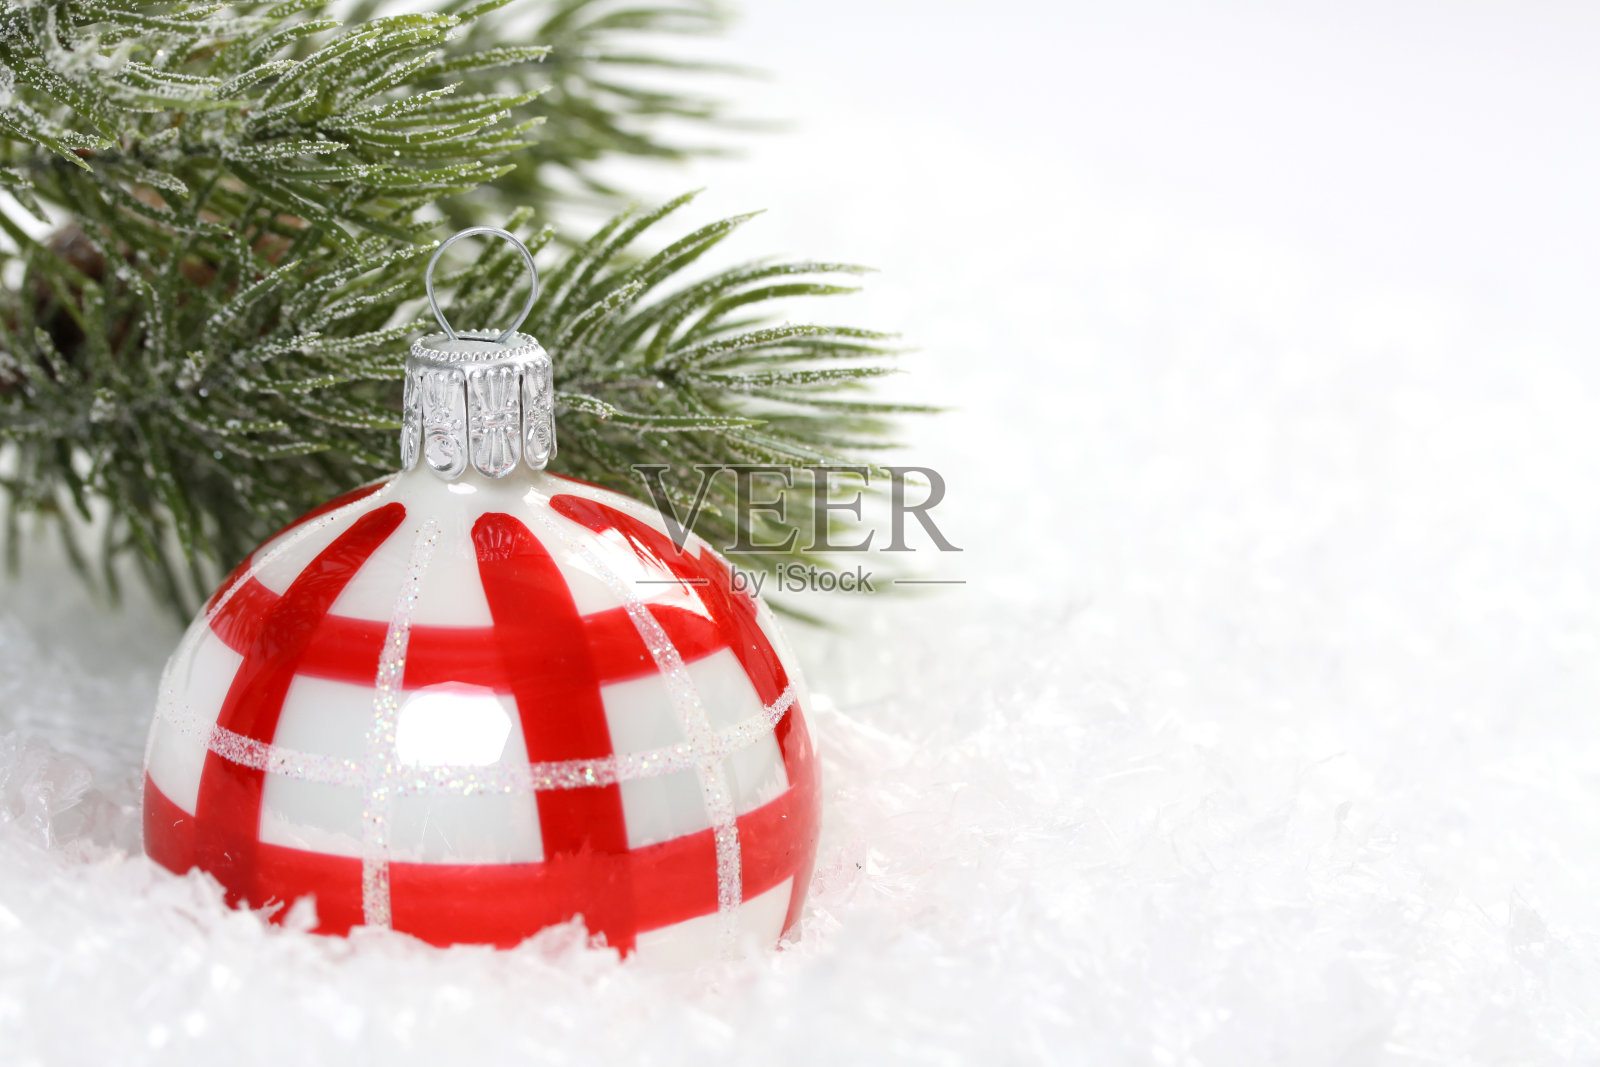 26、红白相间的圣诞球上雪花飞舞，松枝结冰照片摄影图片